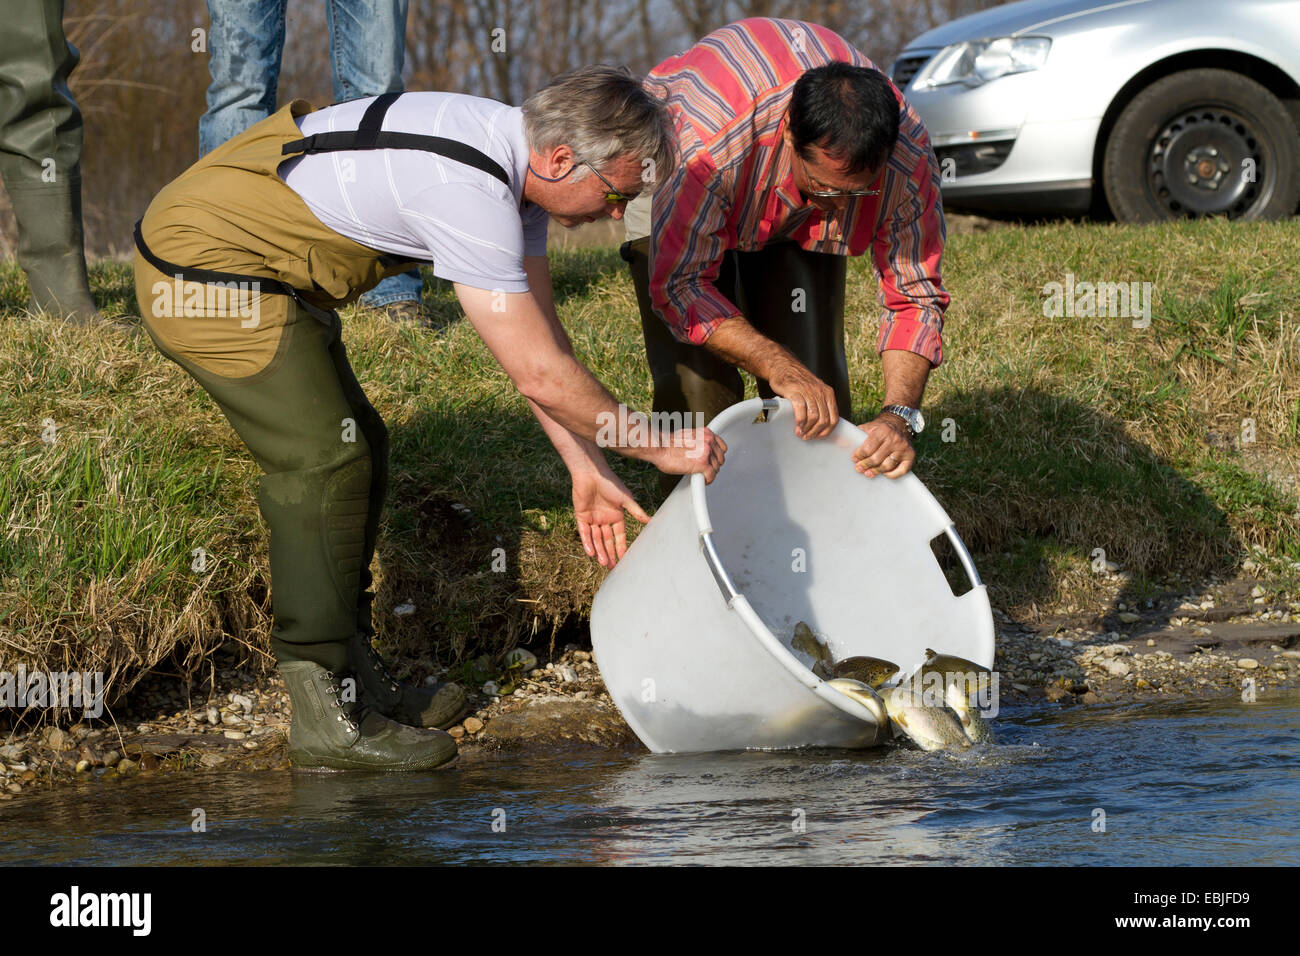 La truite brune, la truite de rivière, l'omble de fontaine (Salmo trutta fario), libérant les poissons dans une rivière, l'Allemagne, la Bavière Banque D'Images